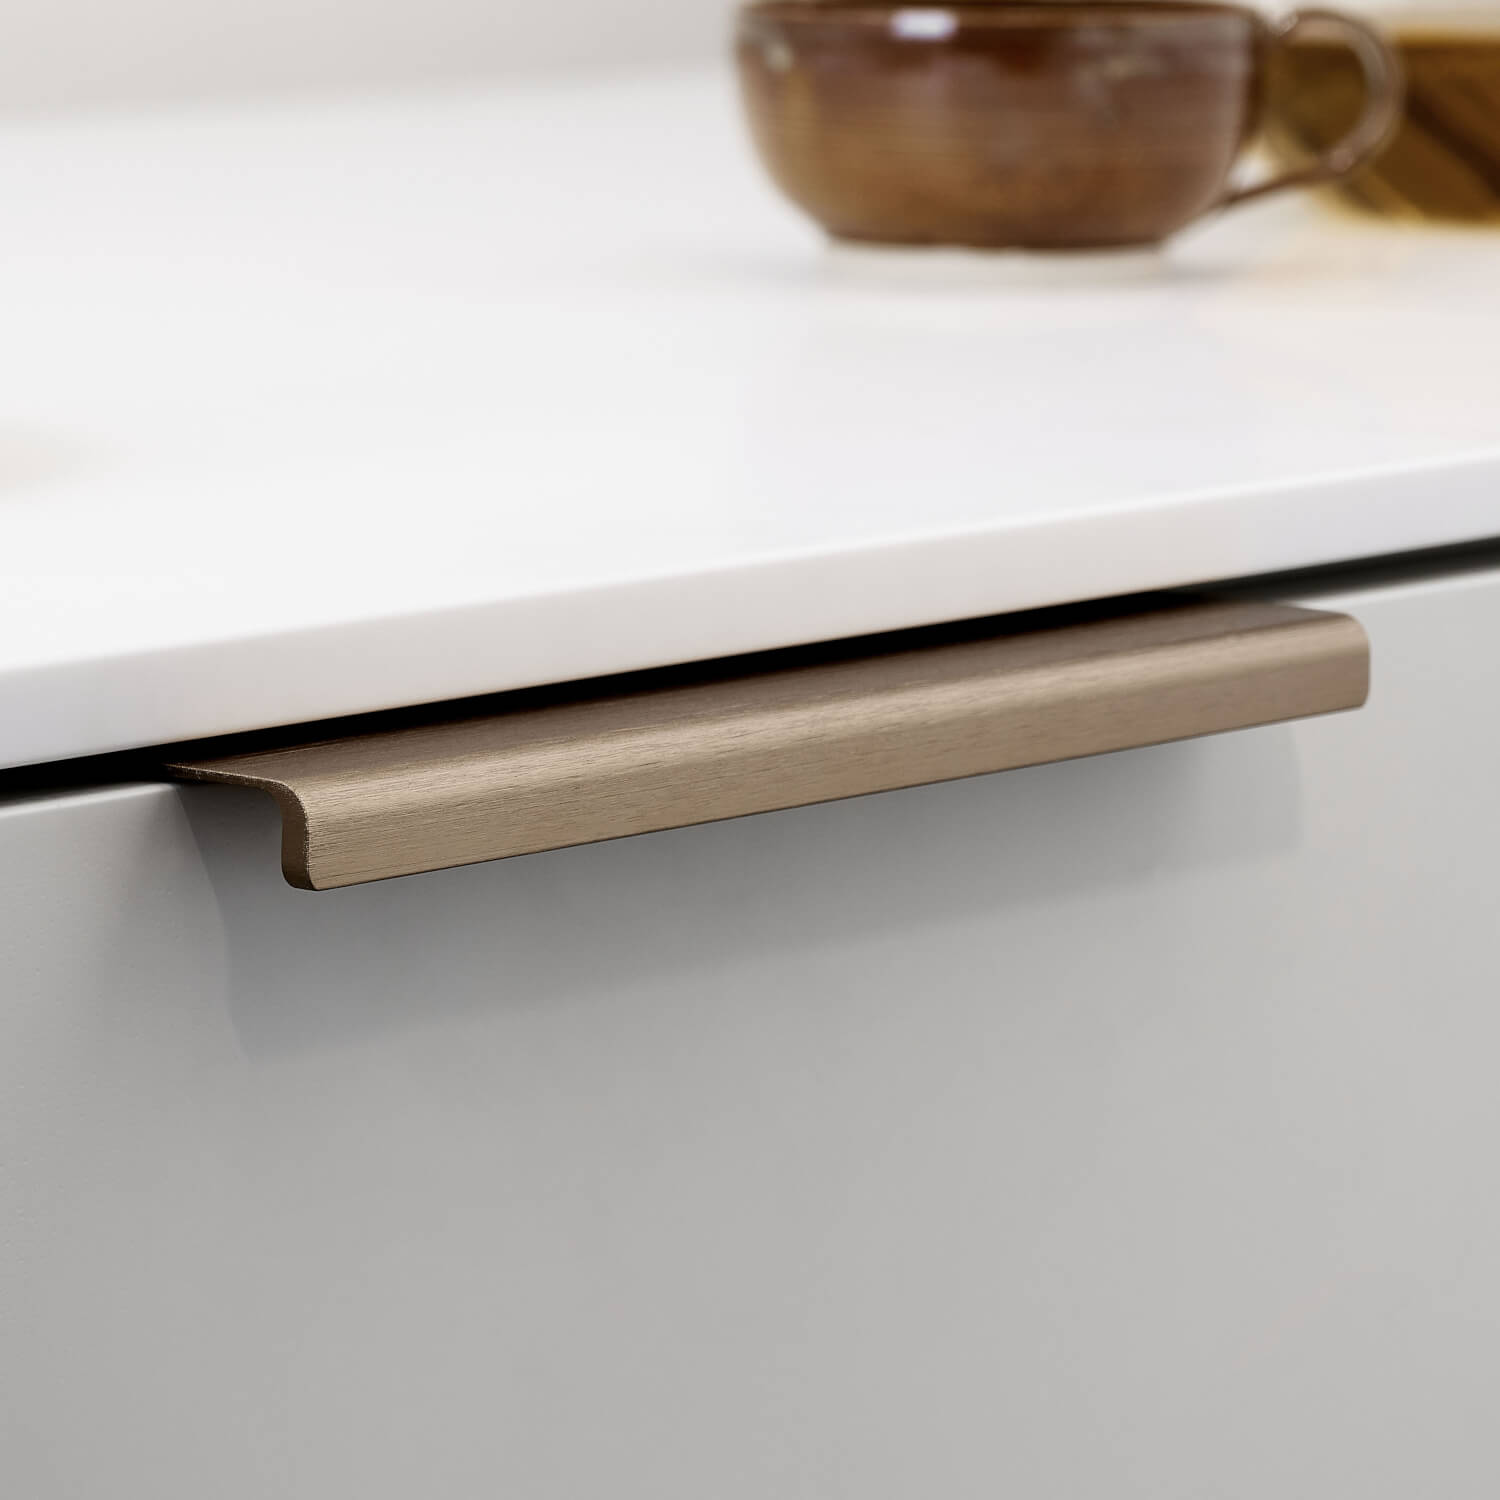 Furnipart cabinet handle - Brushed brass - Model Artisan - Artisan